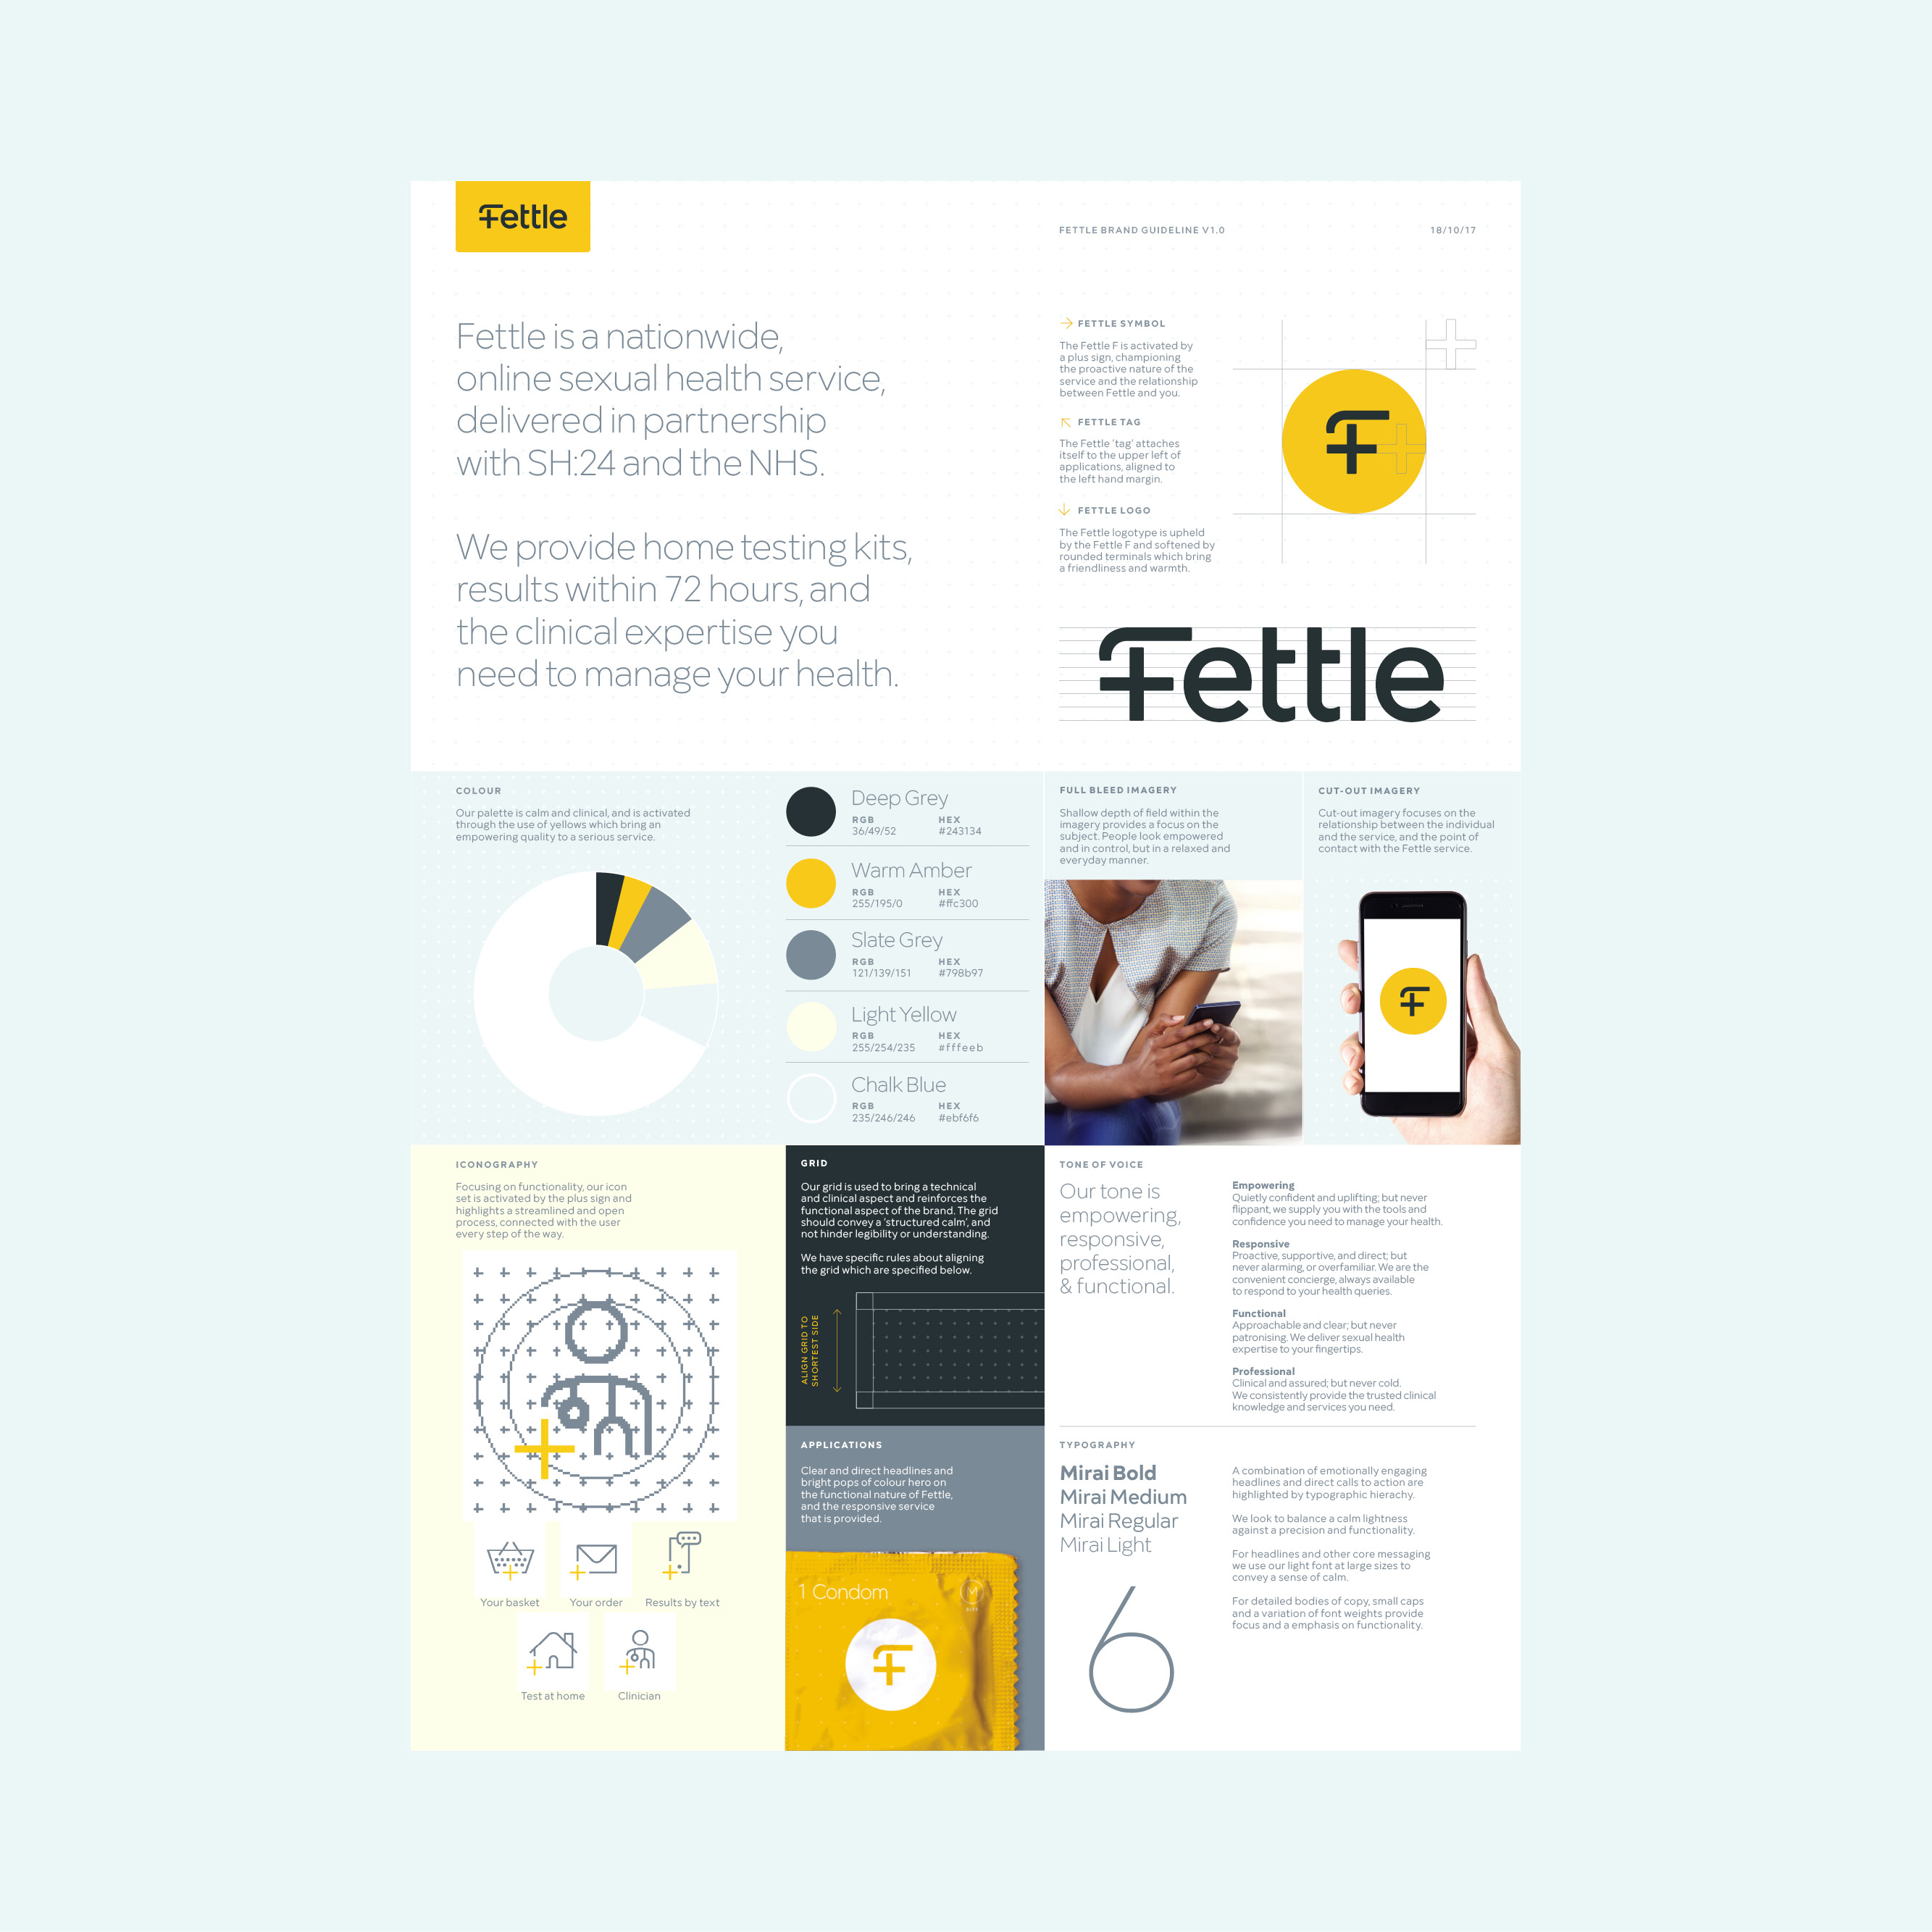 Chris_Pitney_2020_Design_Fettle_Guidelines2